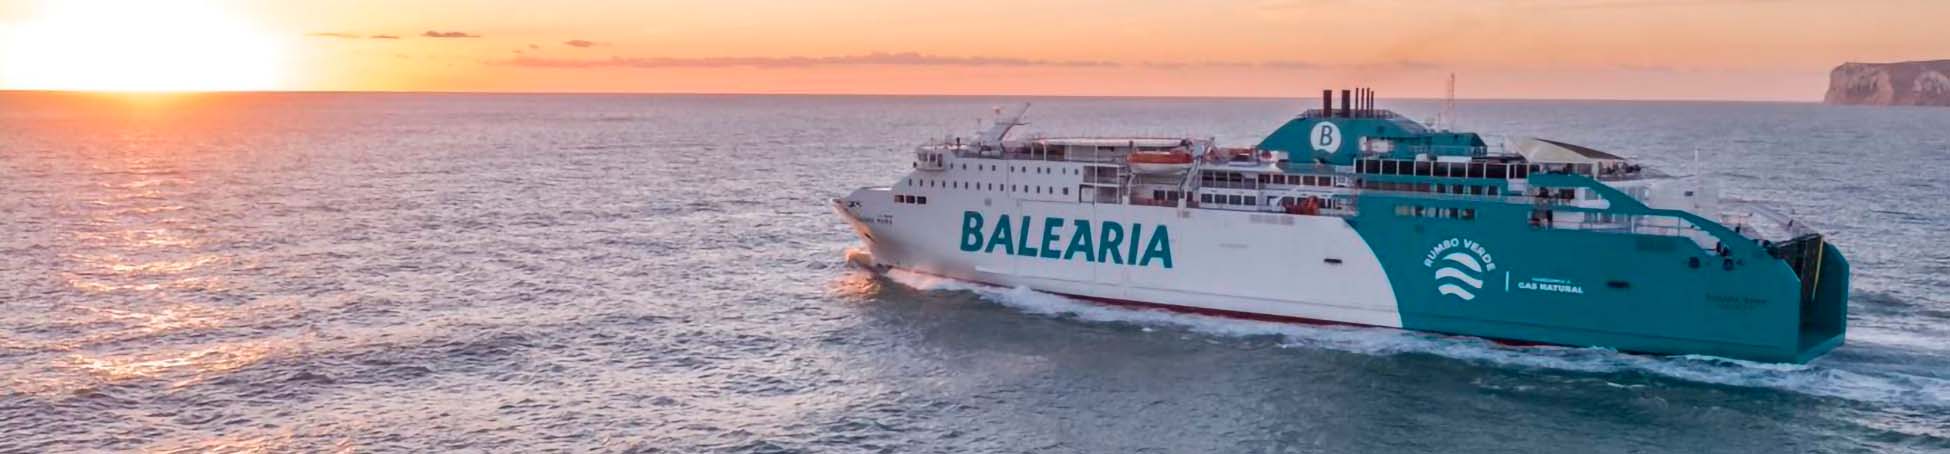 Imatge recurs del port de destinació Dénia per a la ruta en ferry Mallorca (Palma) - Dénia